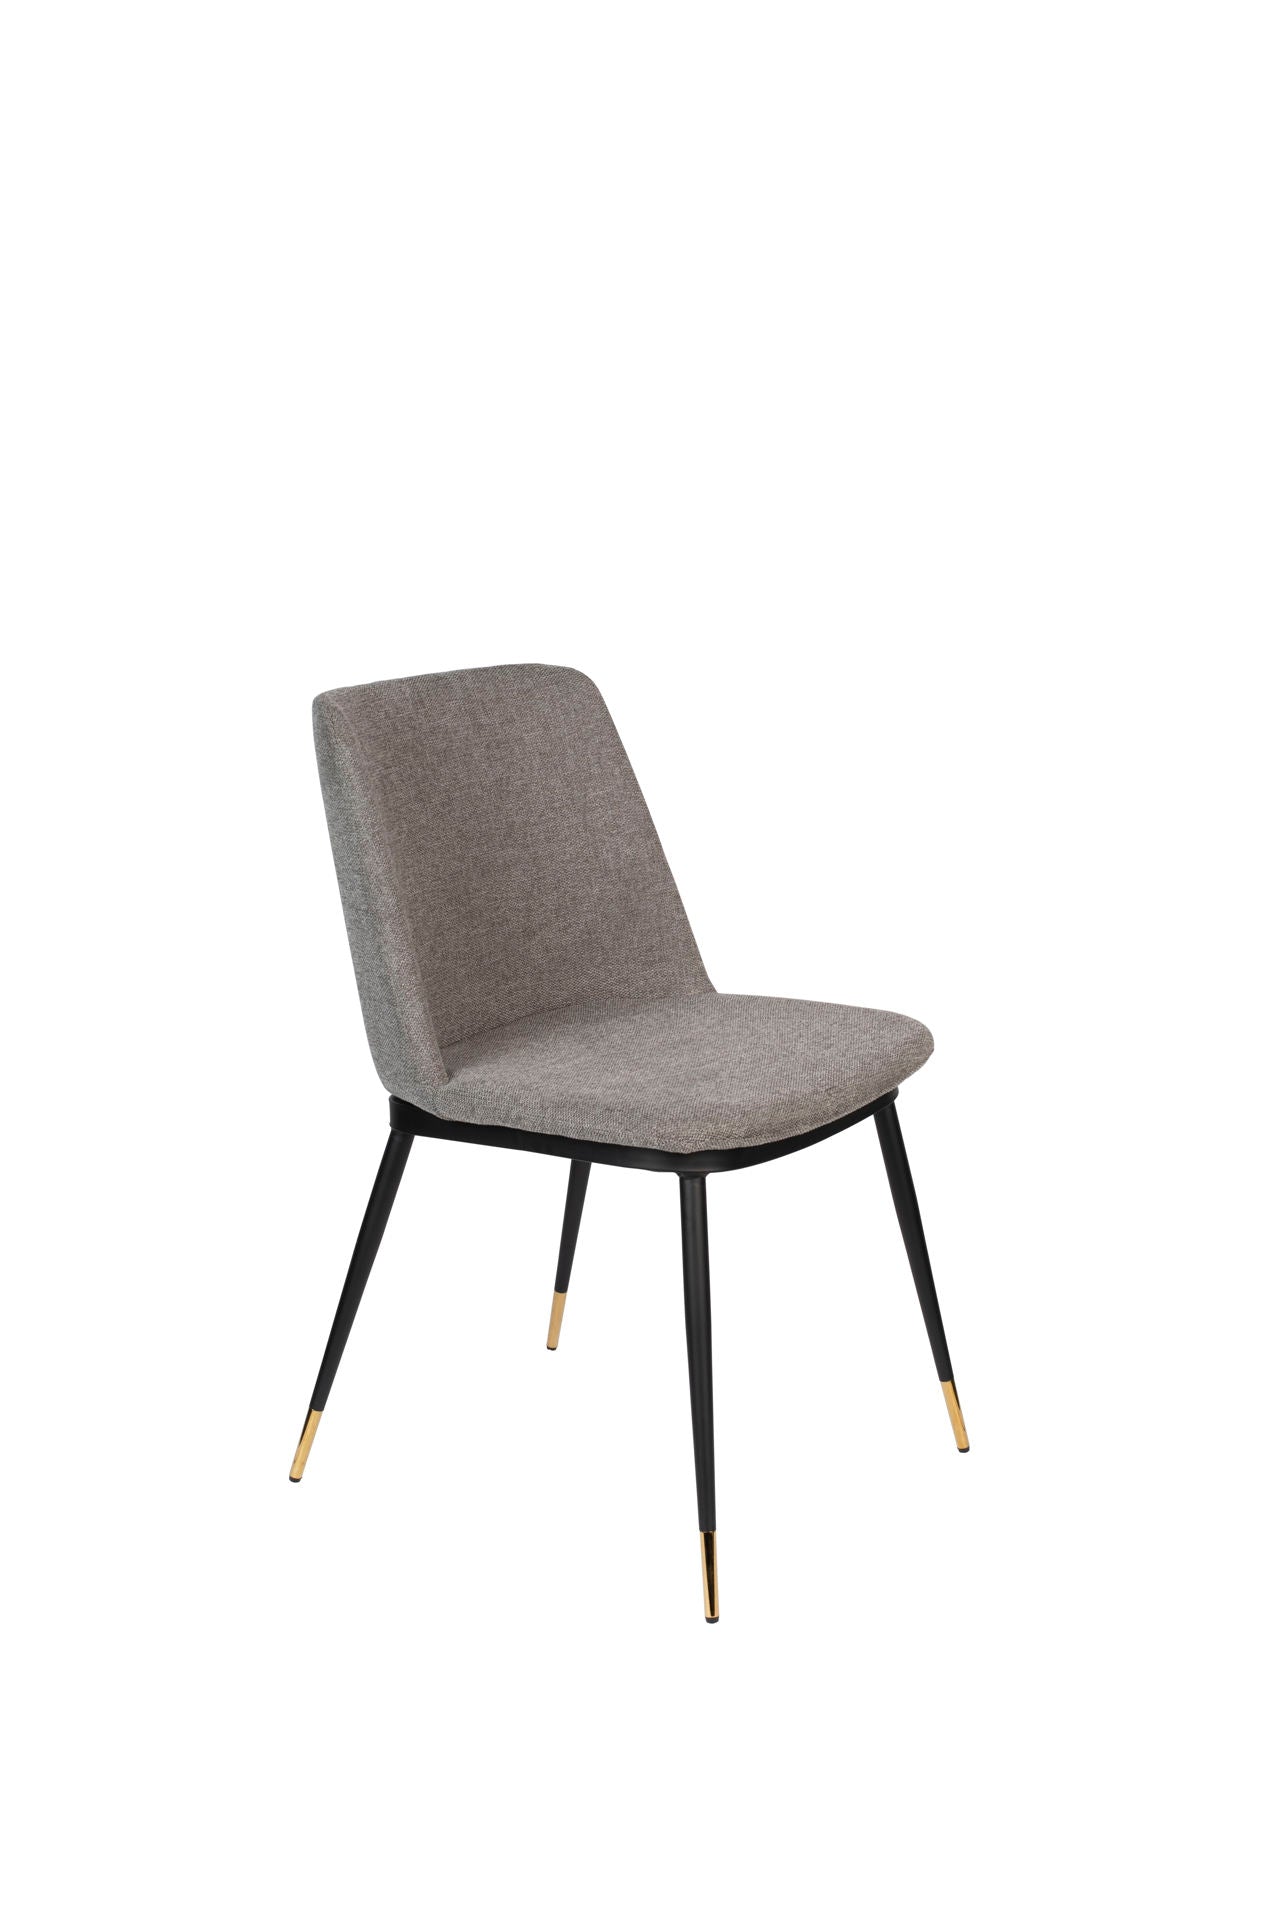 Nancy's Alamo Heights Chair - Rétro - Gris clair, Noir - Polypropylène, Acier, Contreplaqué - 63 cm x 49,6 cm x 80 cm